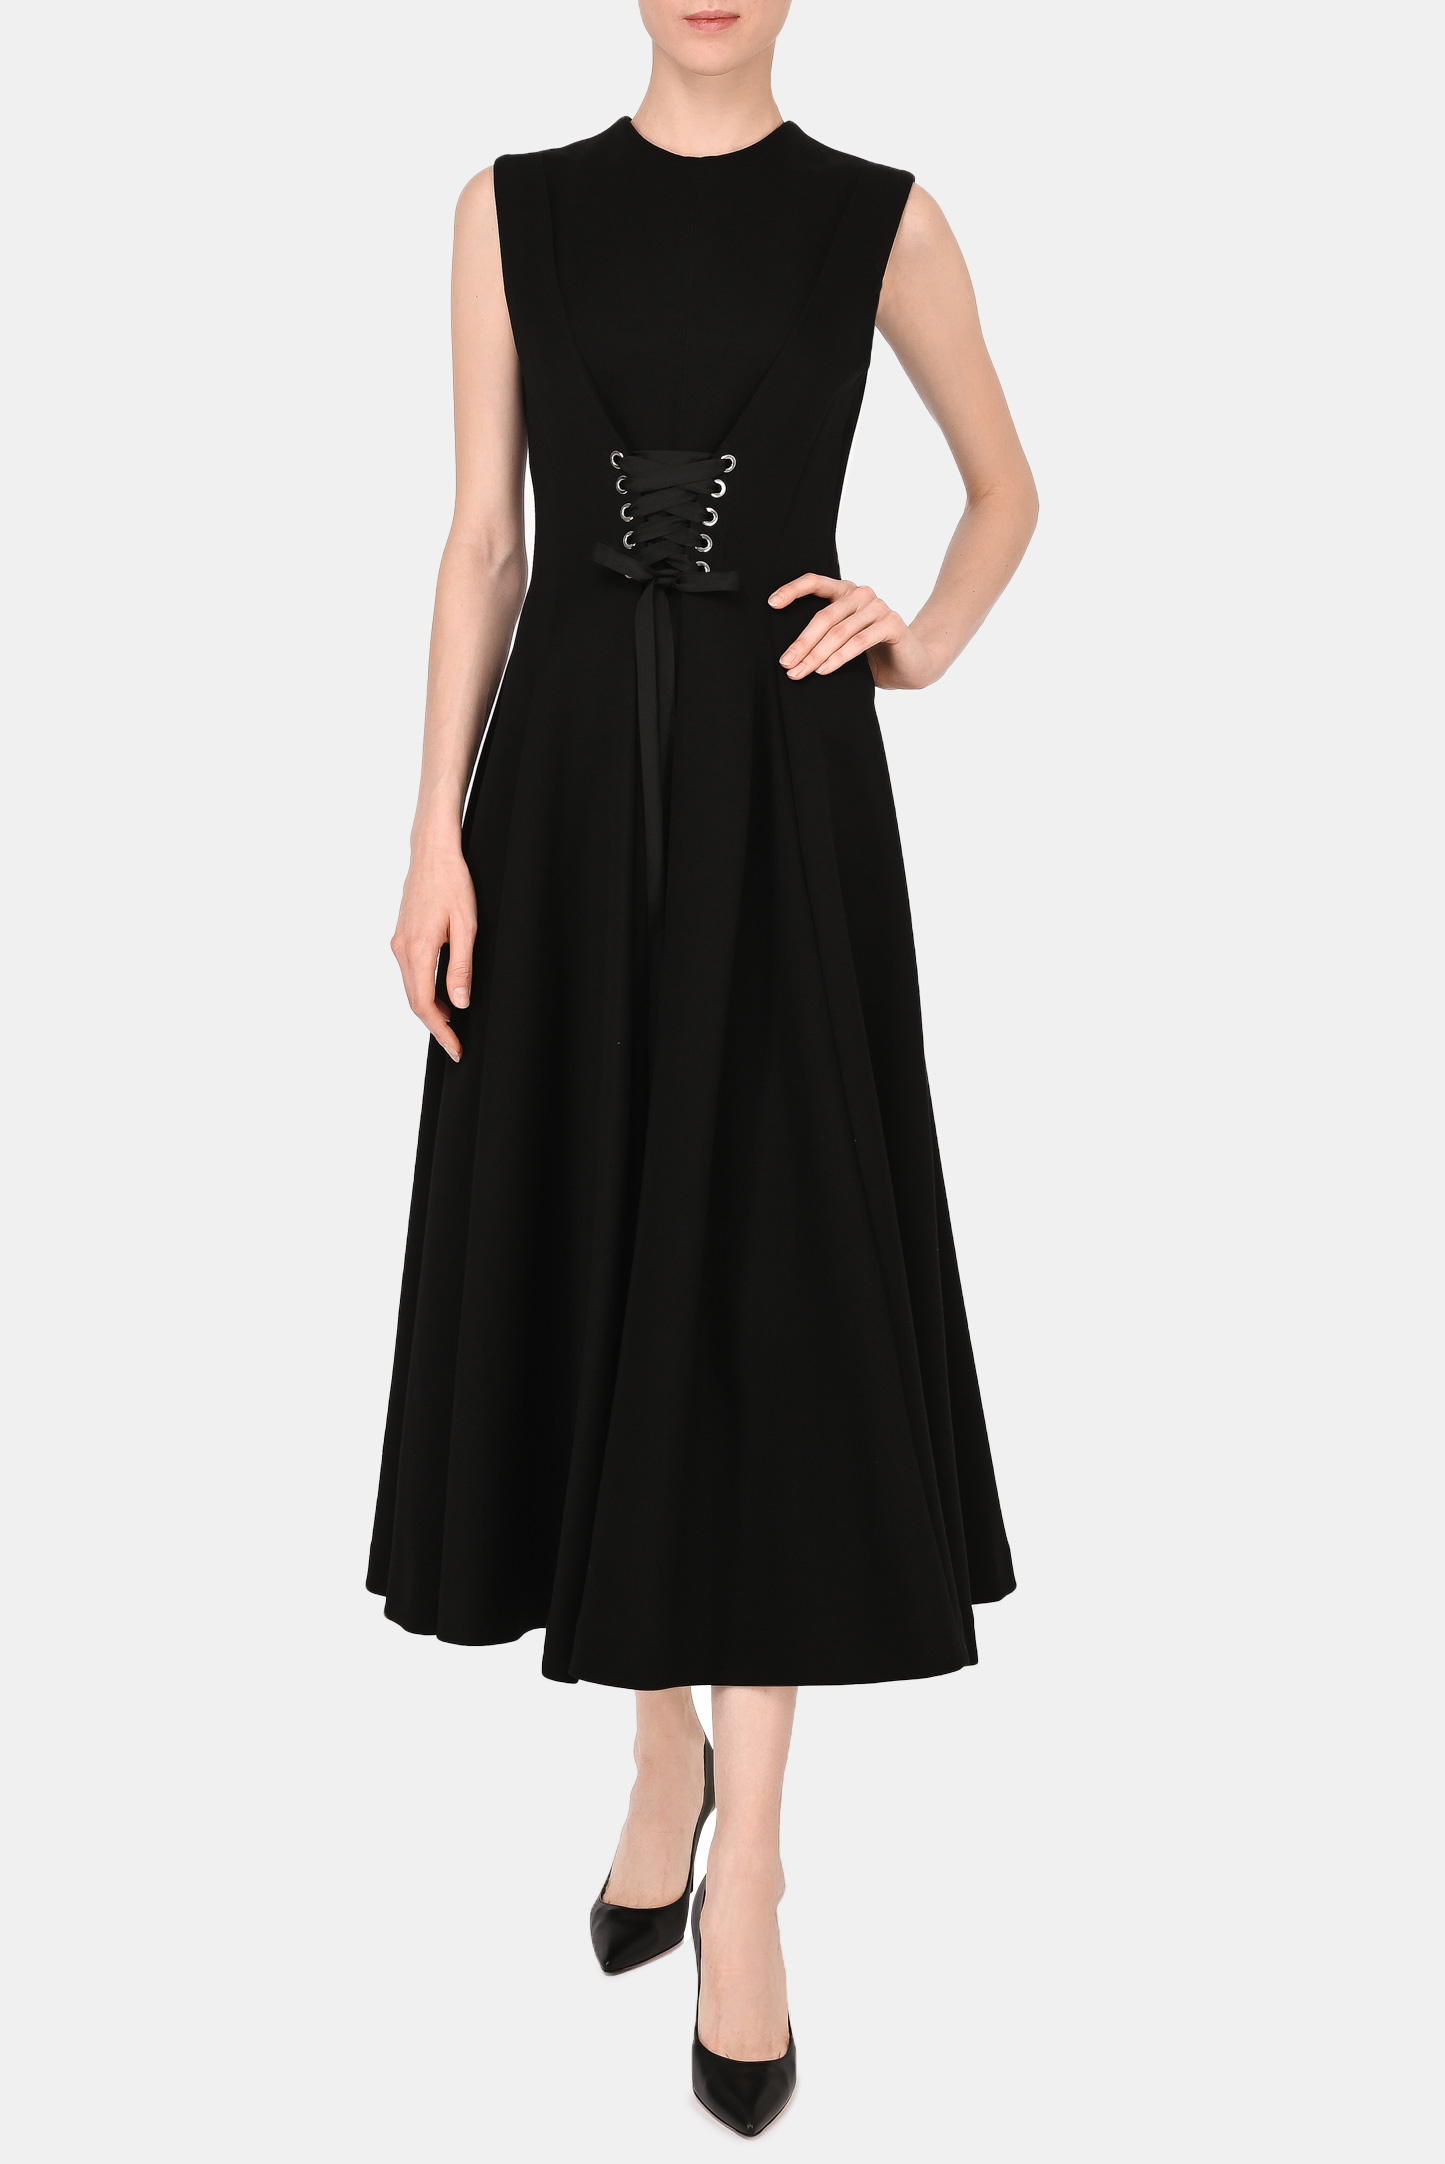 Платье ALEXANDER MCQUEEN 679308 QLABN, цвет: Черный, Женский